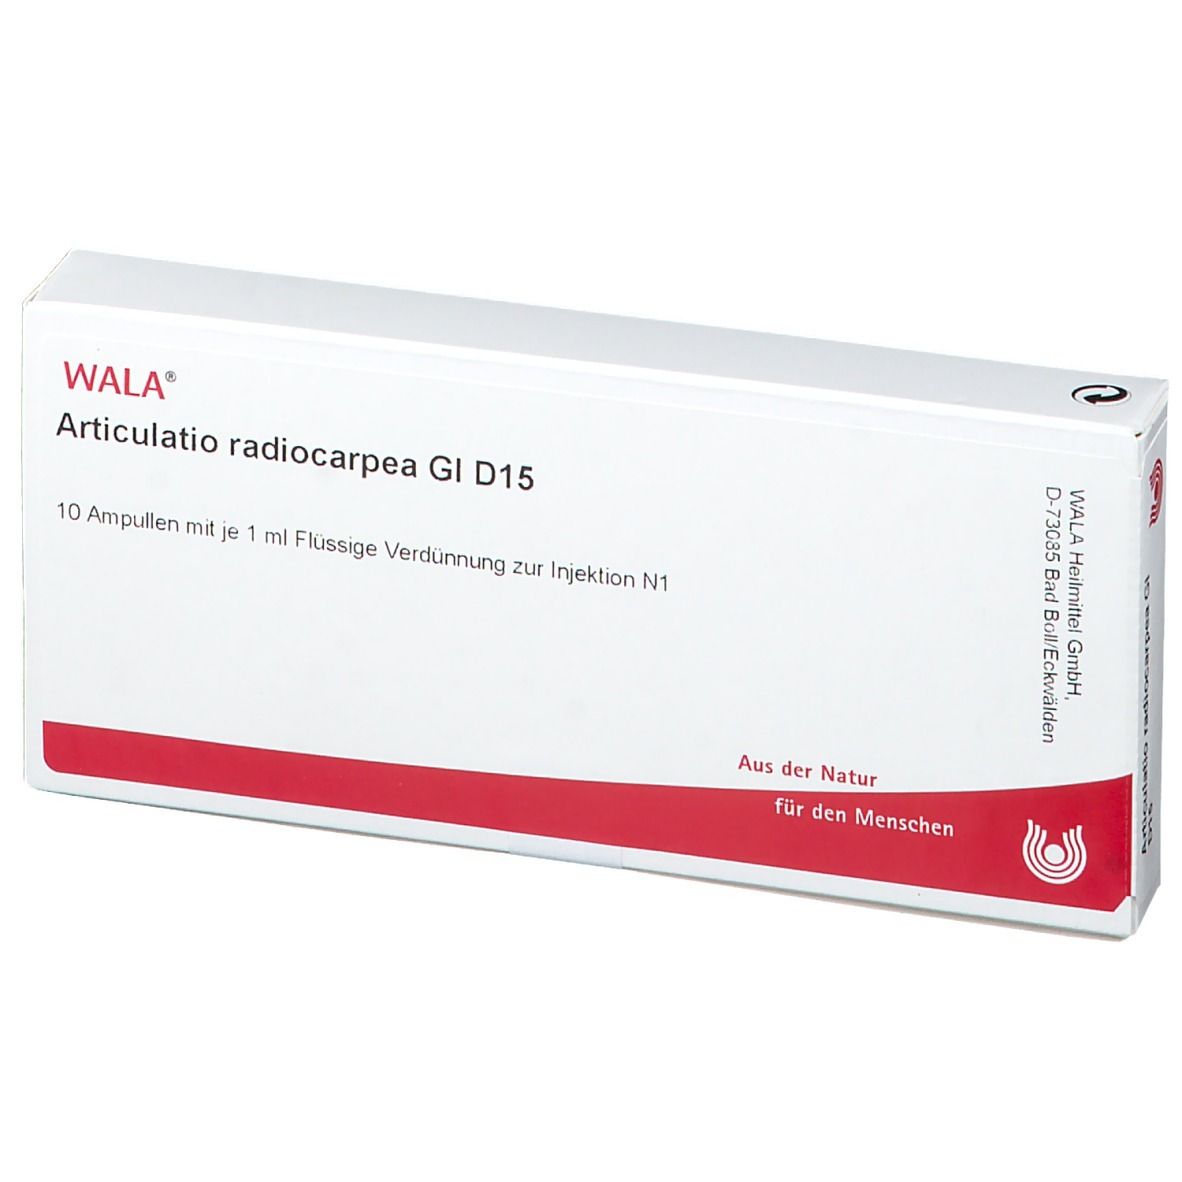 WALA® Articulatio radiocarpea Gl D 15